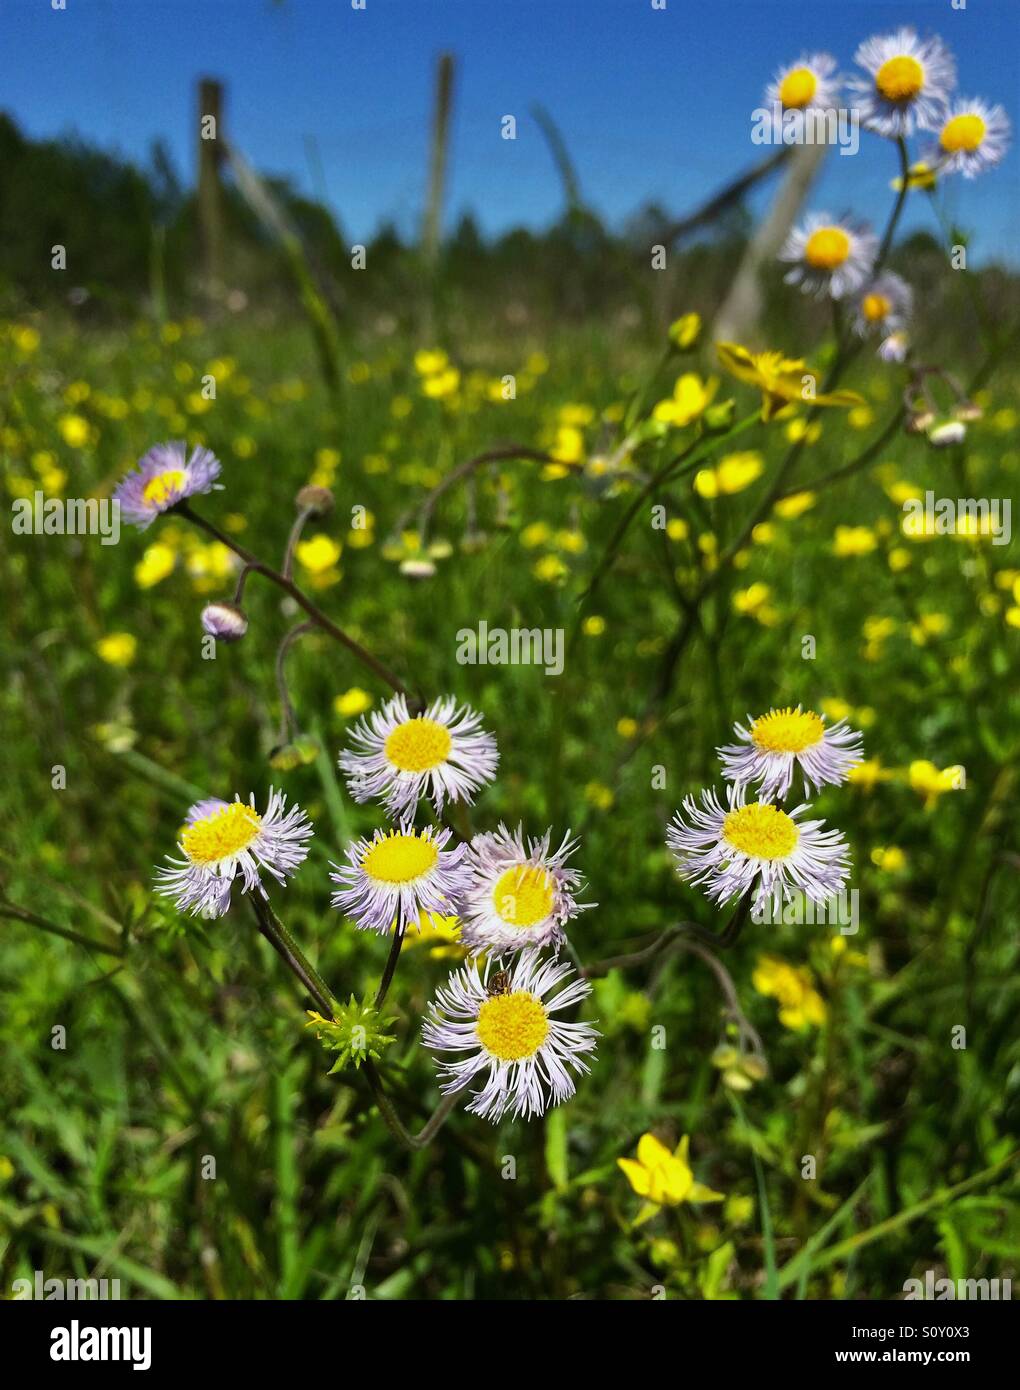 Blumen im Frühling wächst in einem grünen Feld blüht Daisy Berufkraut, Erigeron Annuus, im Vordergrund Stockfoto